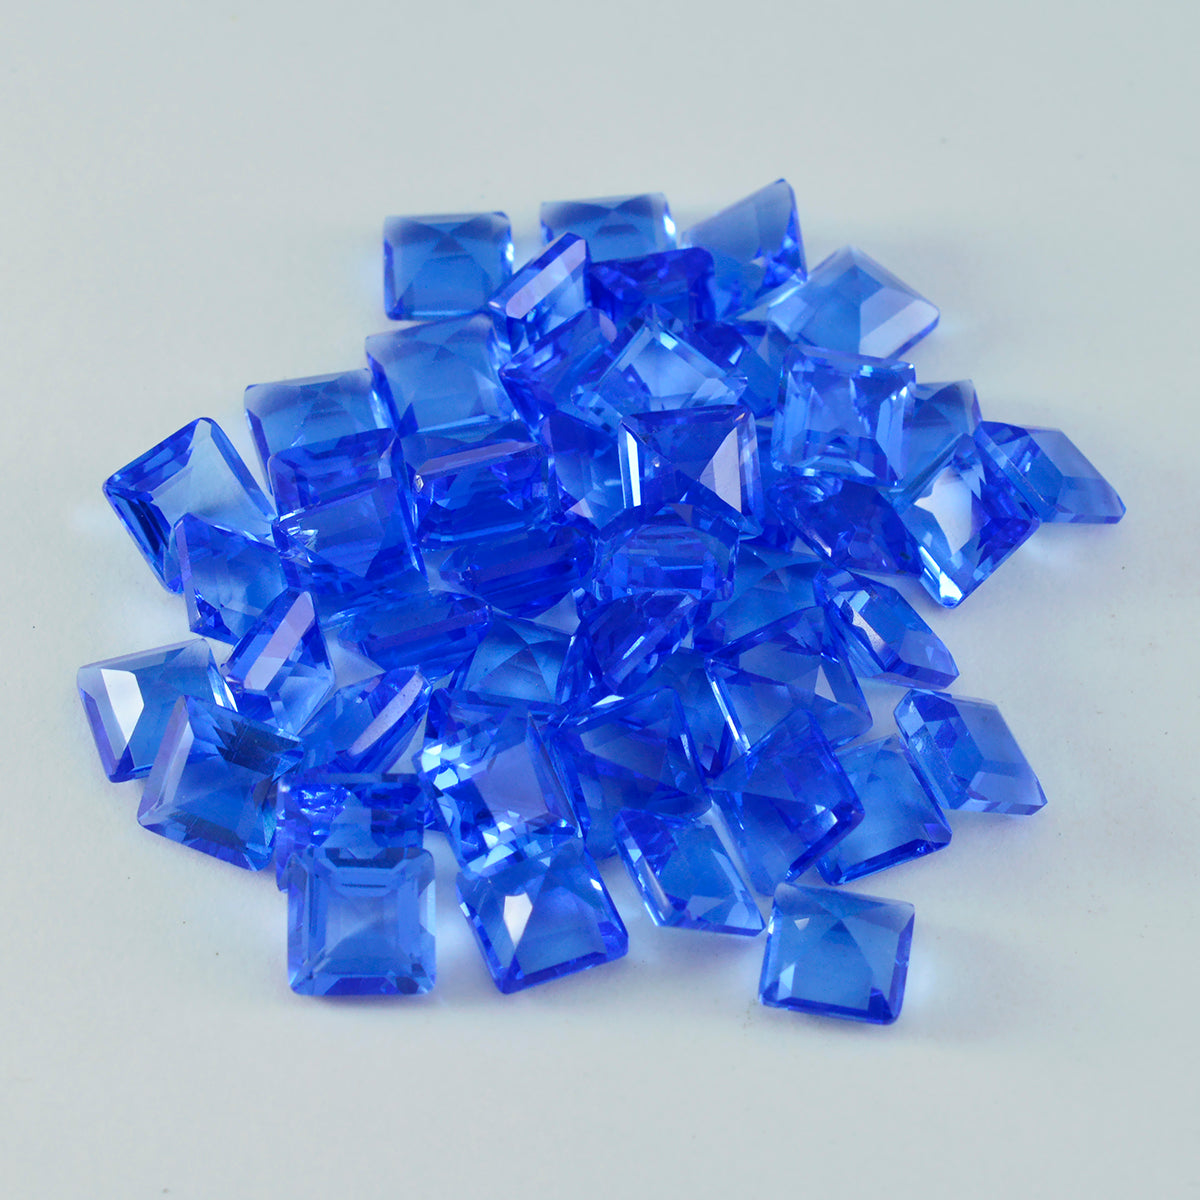 Riyogems 1 Stück blauer Saphir, CZ, facettiert, 6 x 6 mm, quadratische Form, schöner Qualitäts-Edelstein